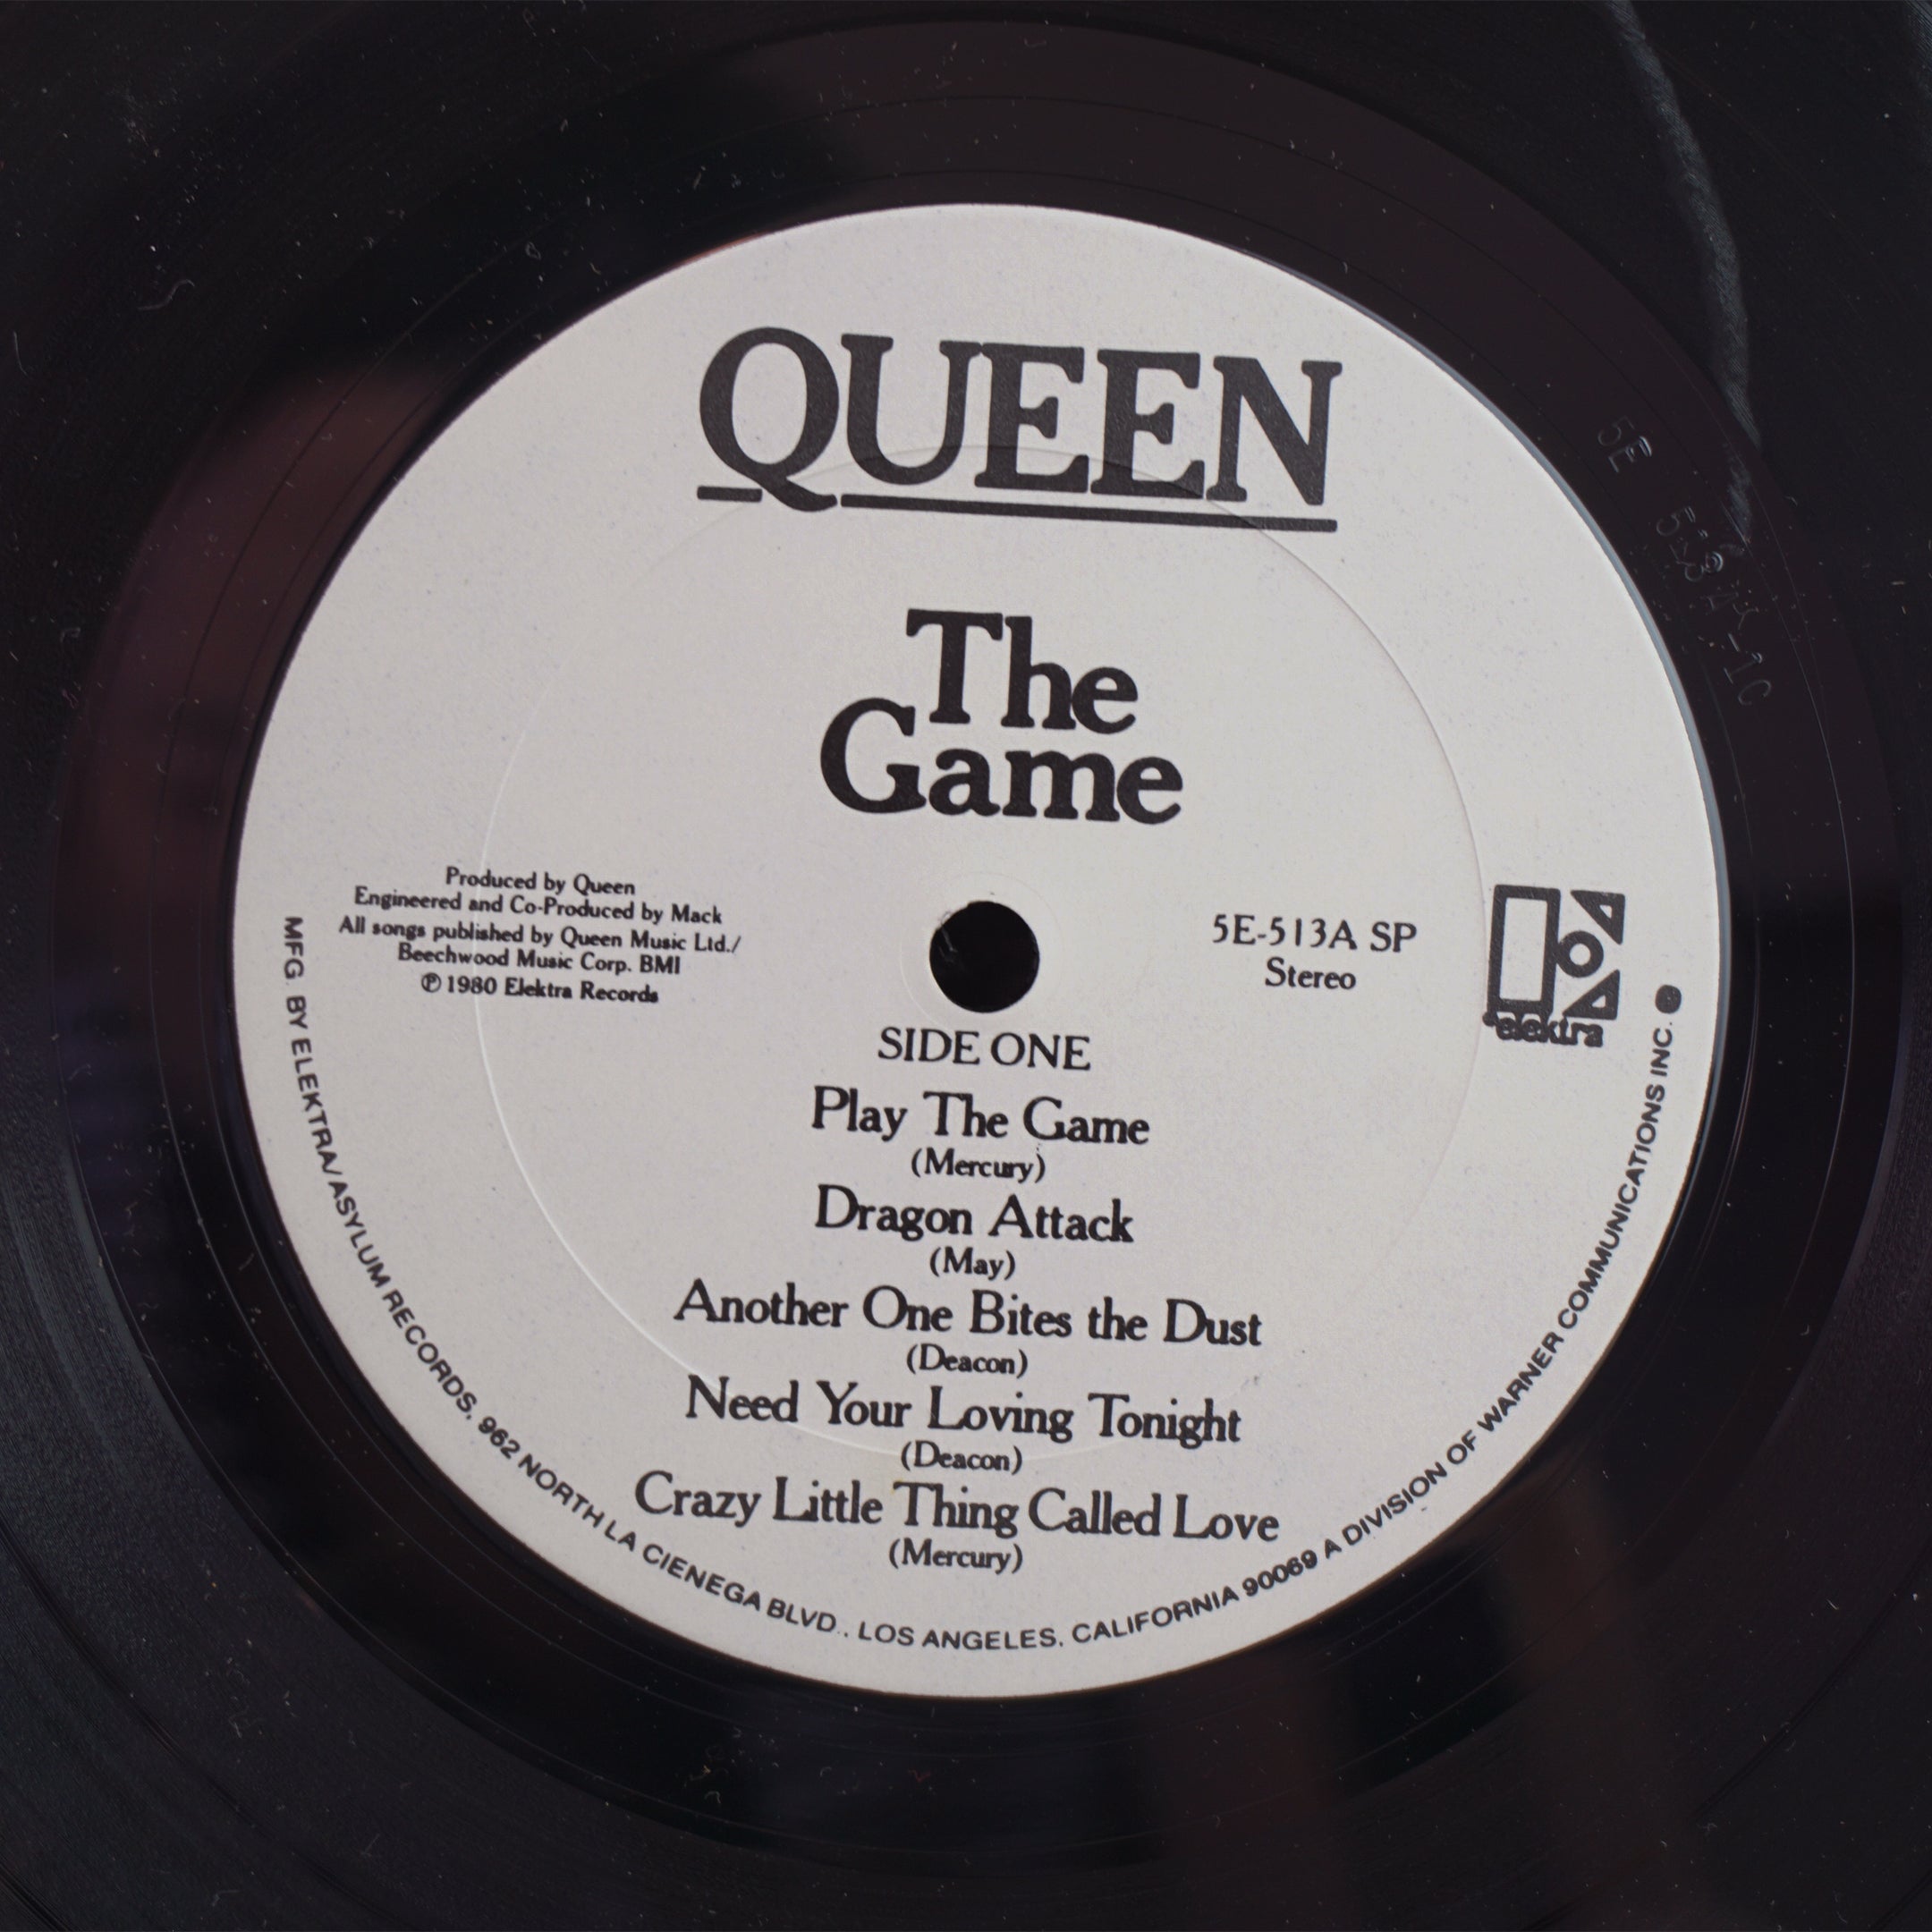 1980 Vintage E Elektra Records QUEEN "The Game" Vinyl LP Record. 5E-513A SP